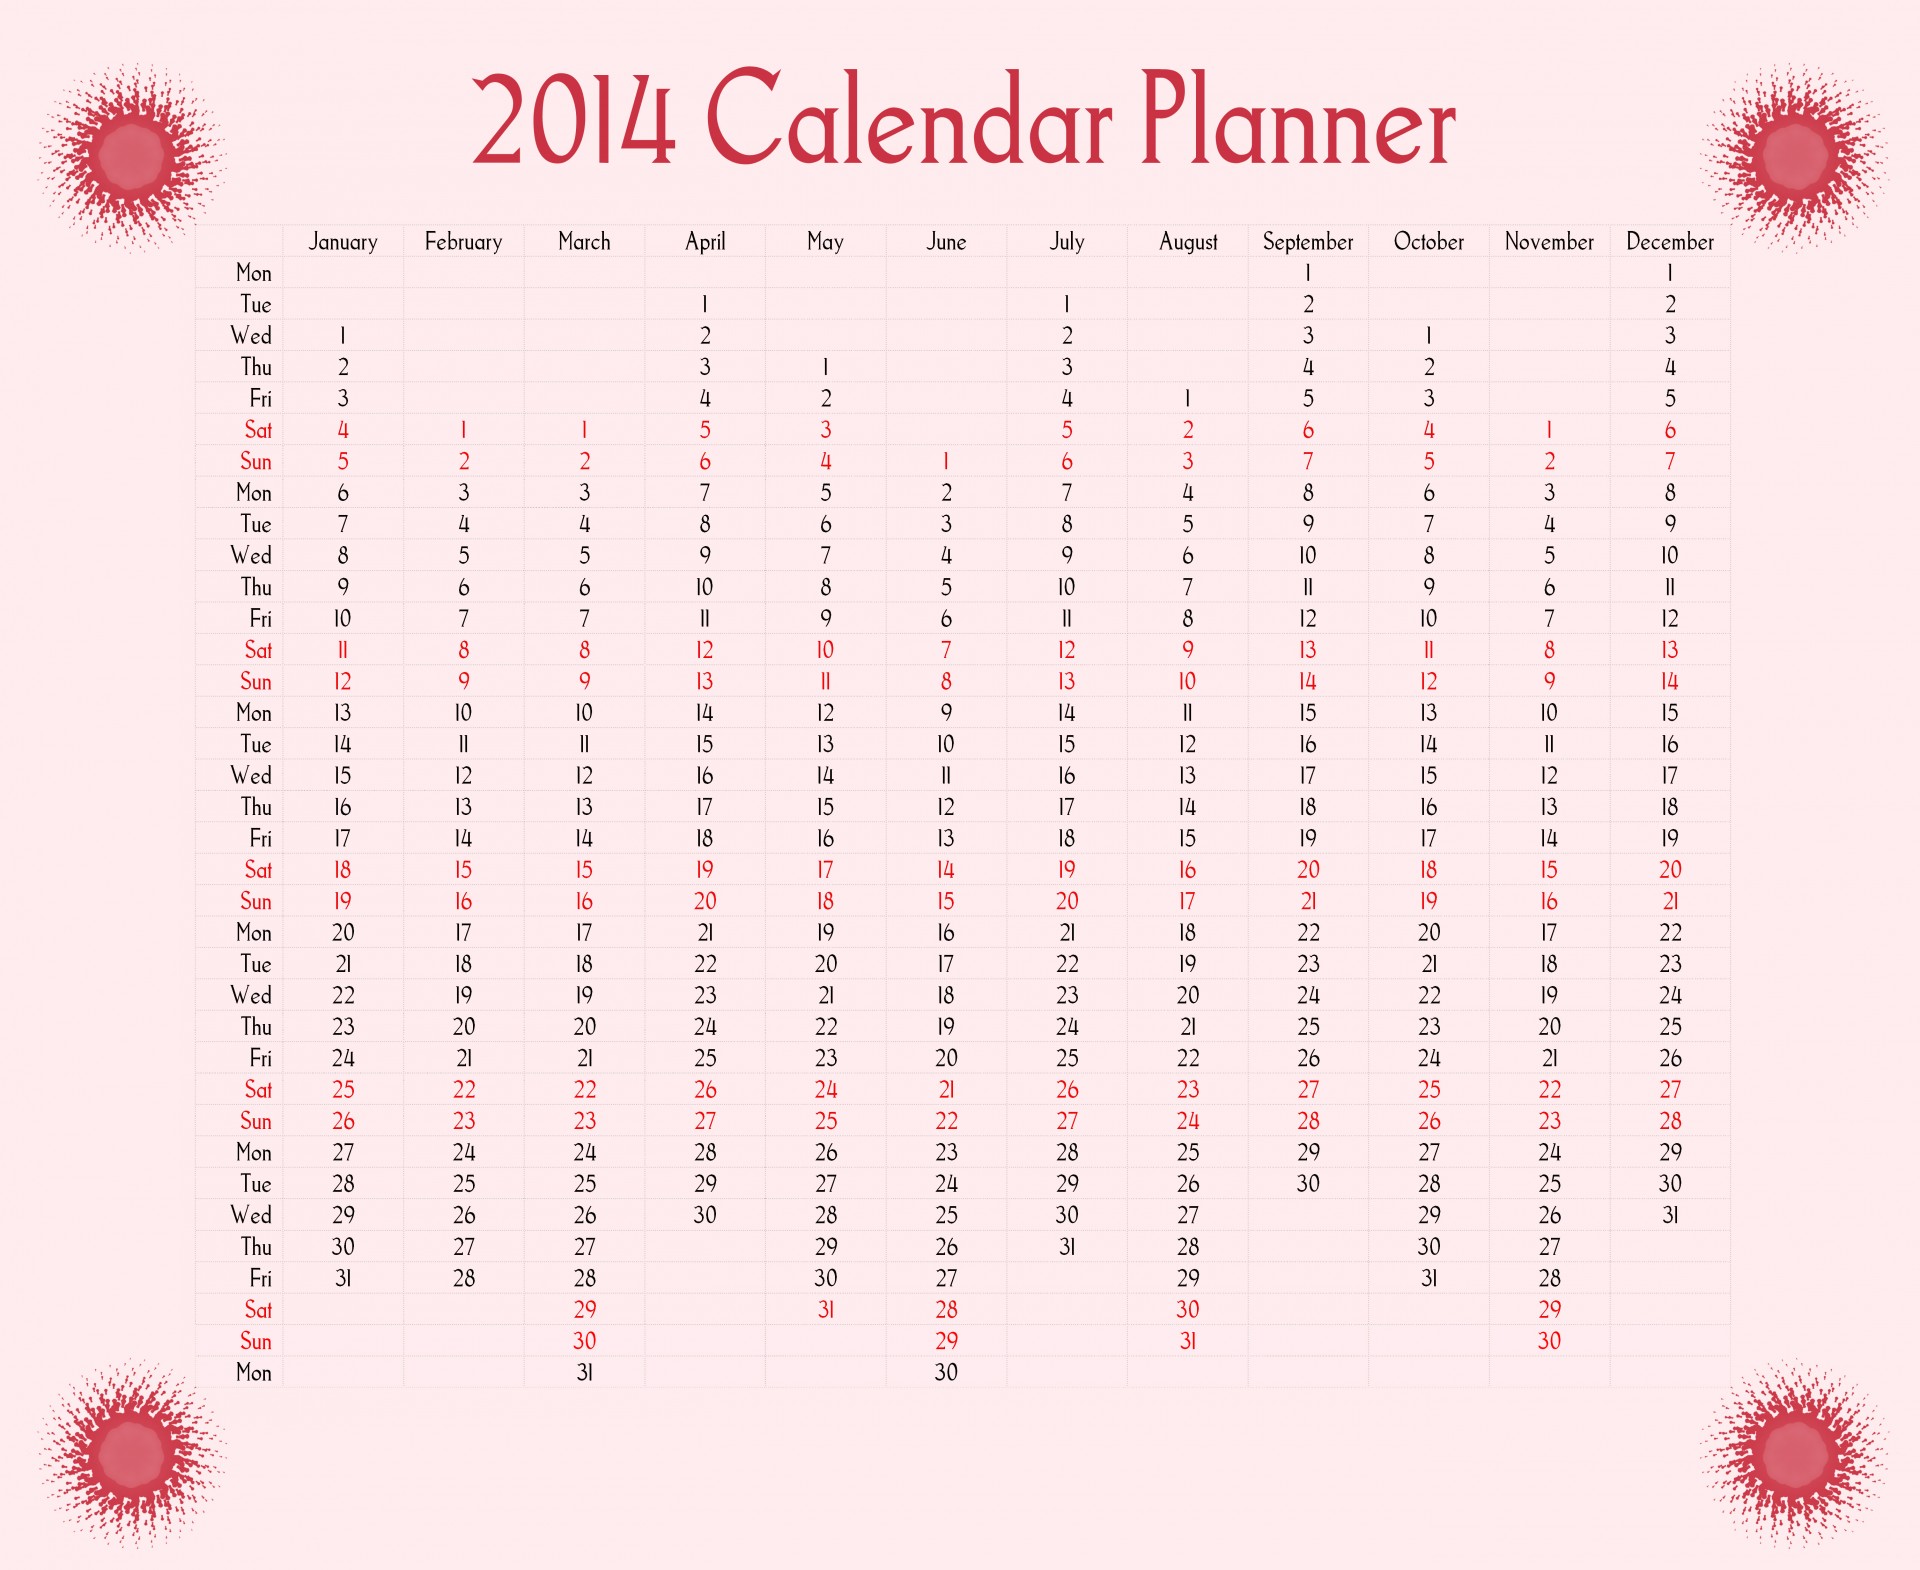 Red Sun 2014 Calendar Planner